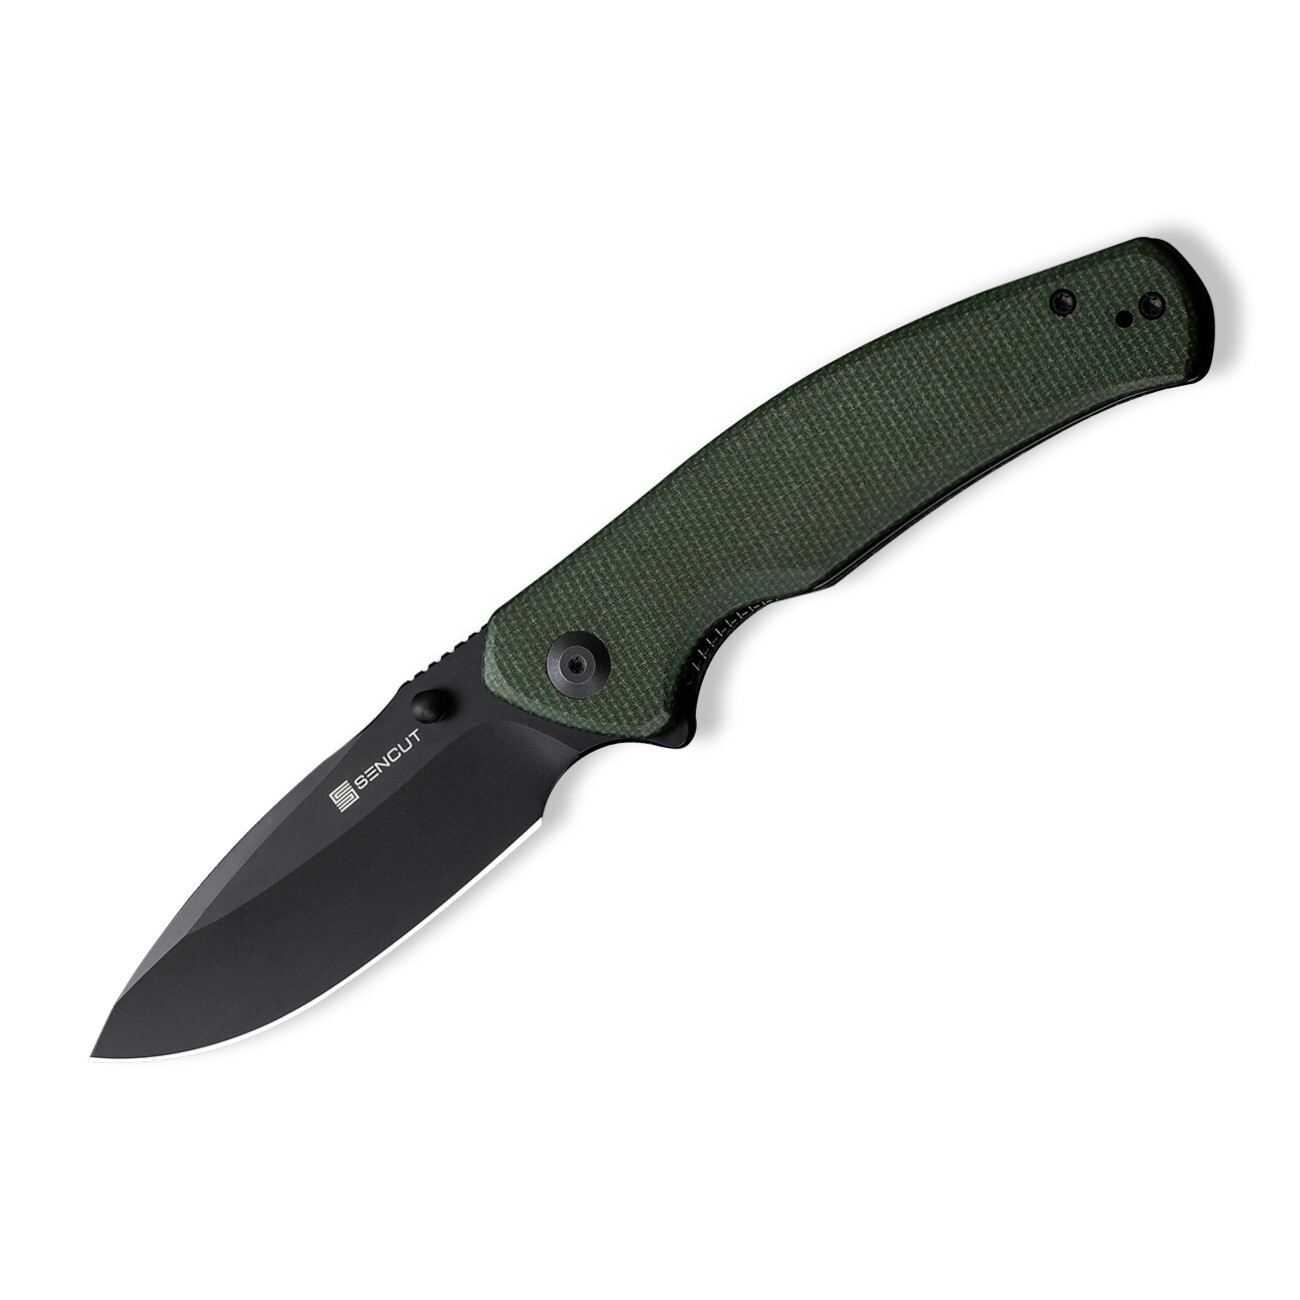 Складной нож Sencut Slashkin, сталь D2, рукоять canvas micarta, black/green складной нож bestech swift сталь d2 micarta